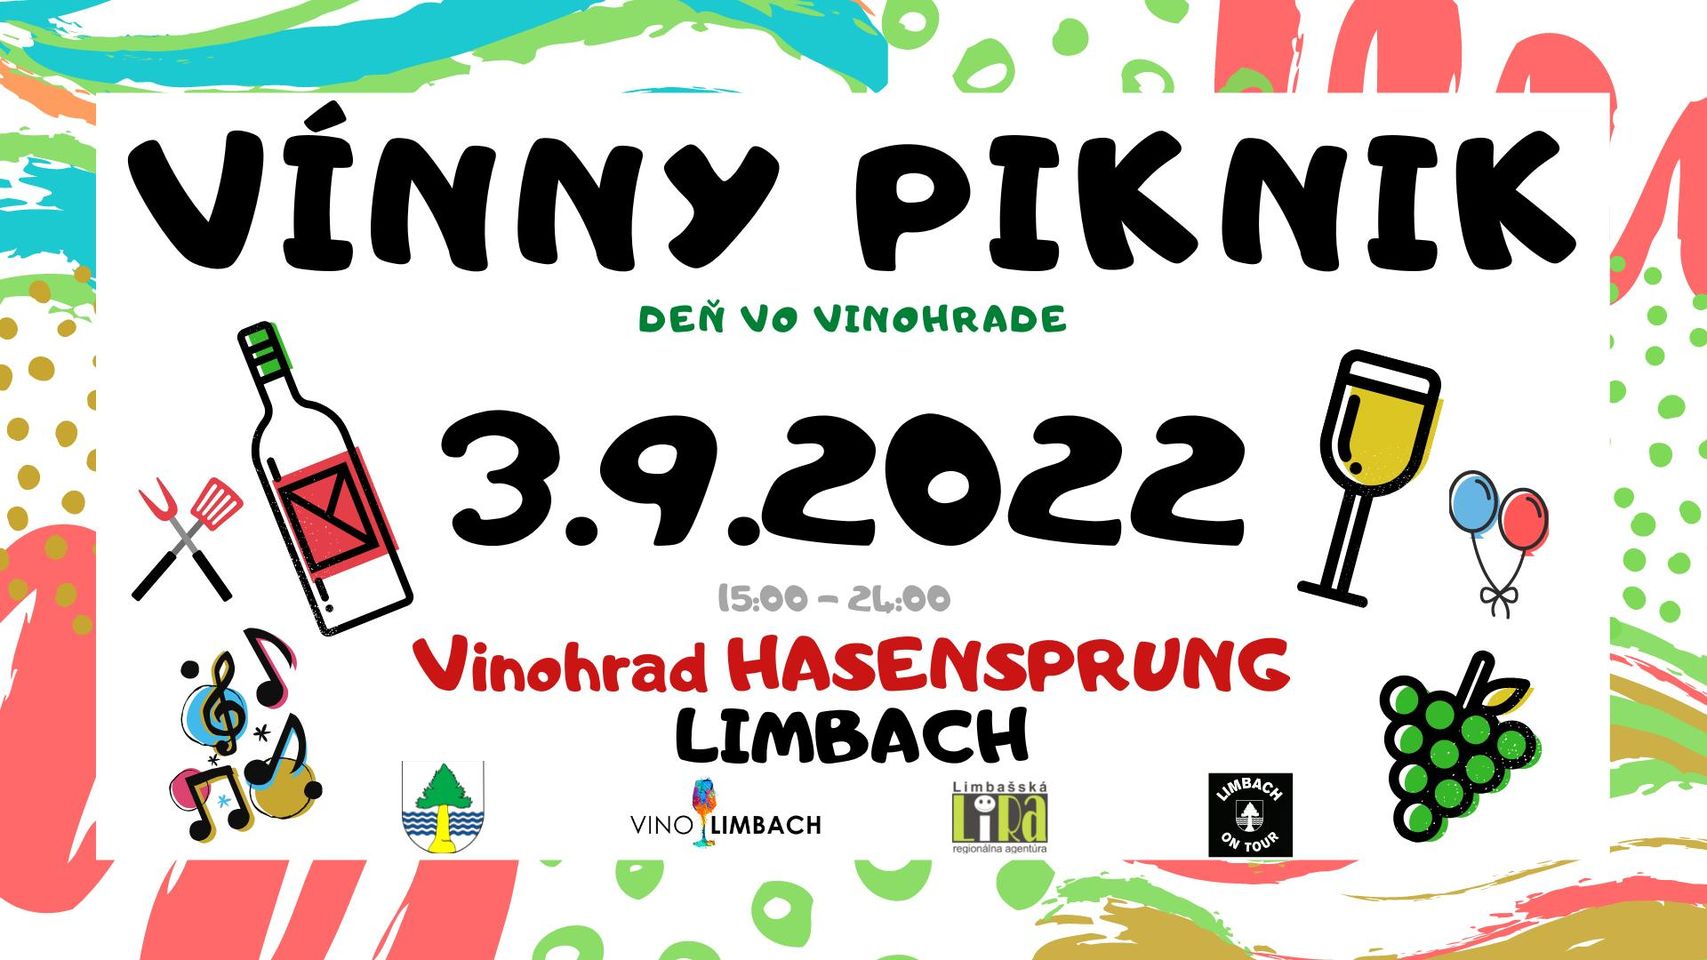 Vínny piknik Limbach 2022 - deň vo vinohrade